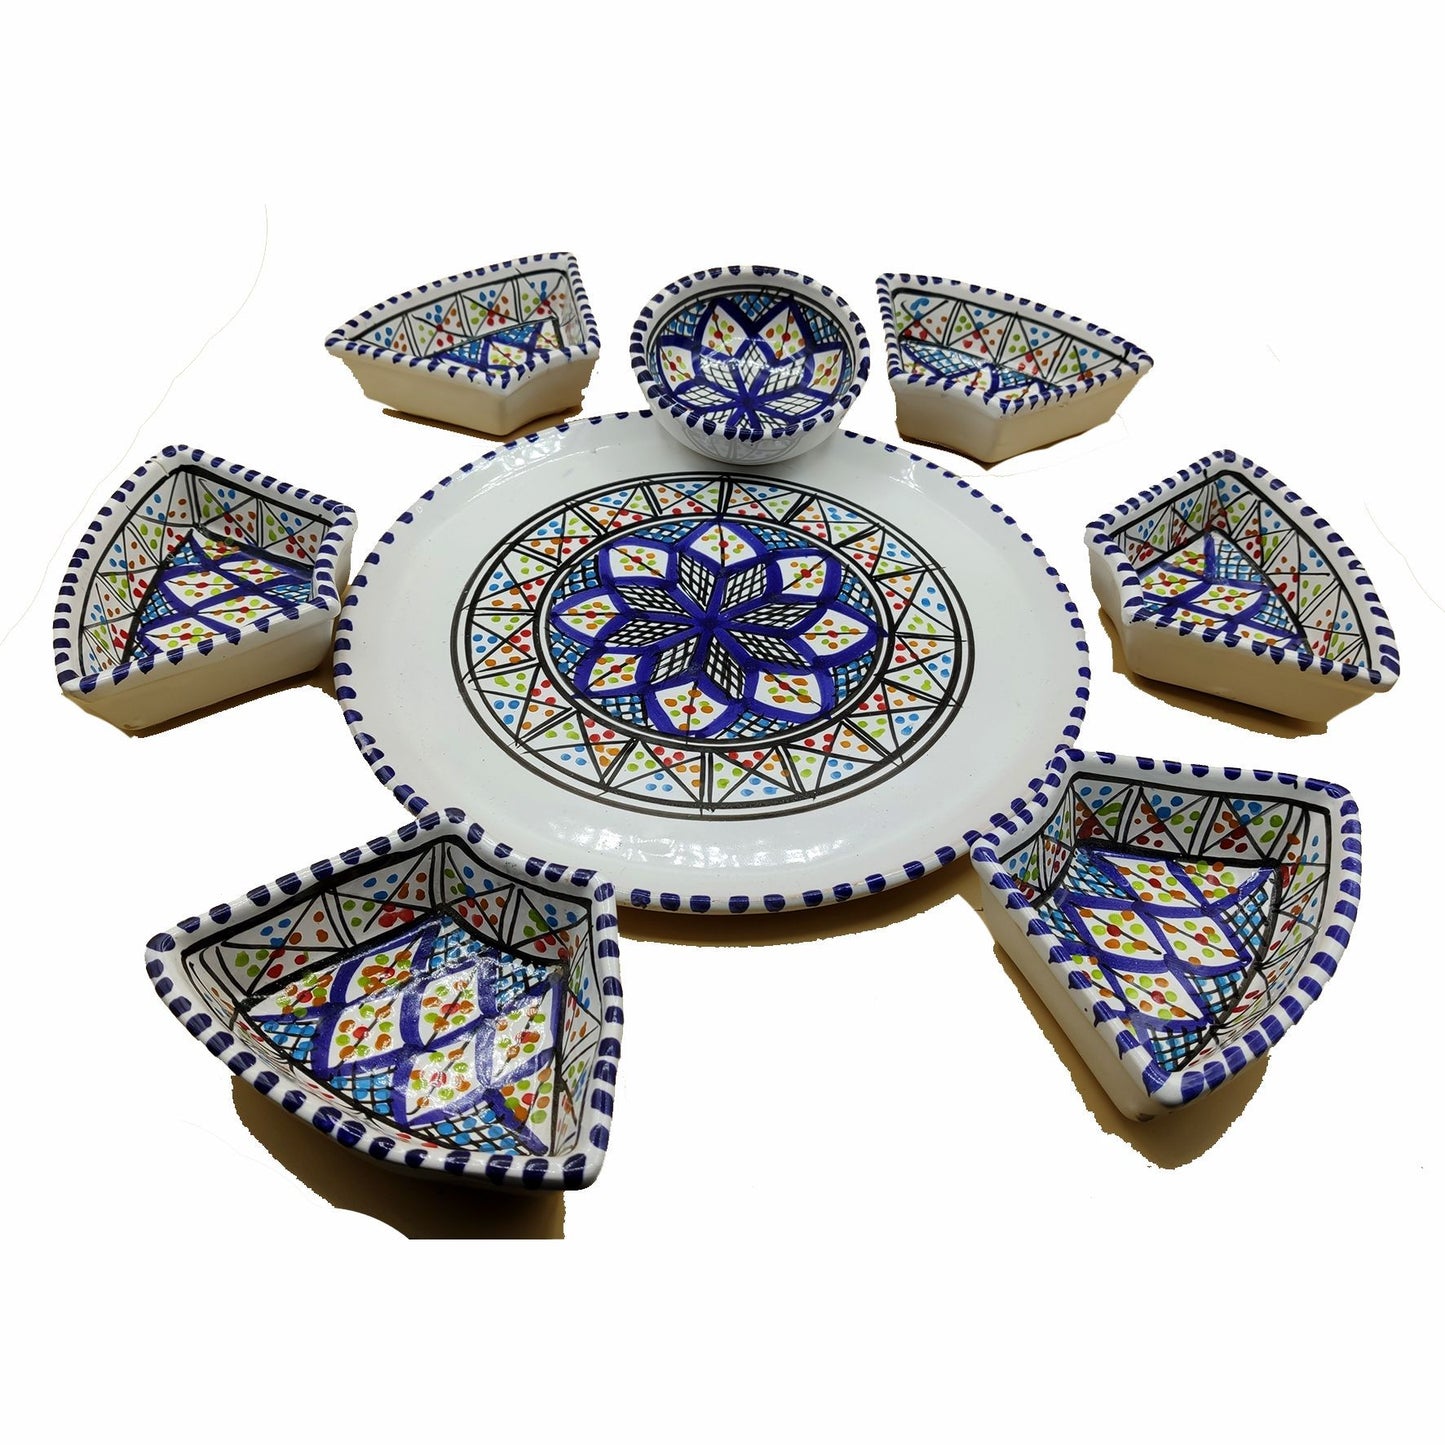 Antipastiera Piatto Etnico Ceramica Terracotta Tunisina Marocchina 2611201210